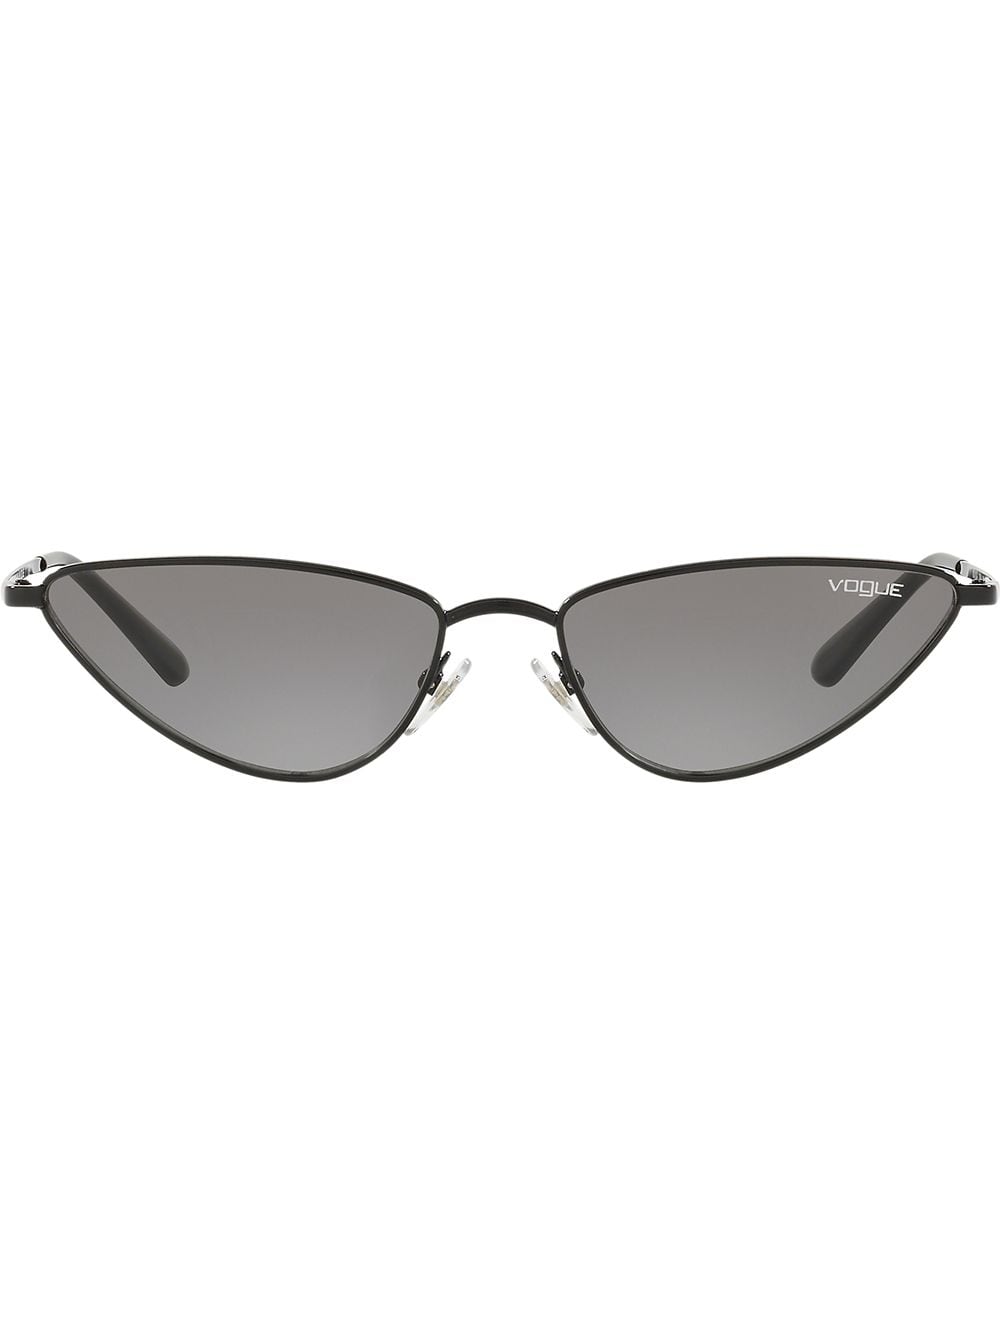 Vogue Eyewear La Fayette Sunglasses In Black